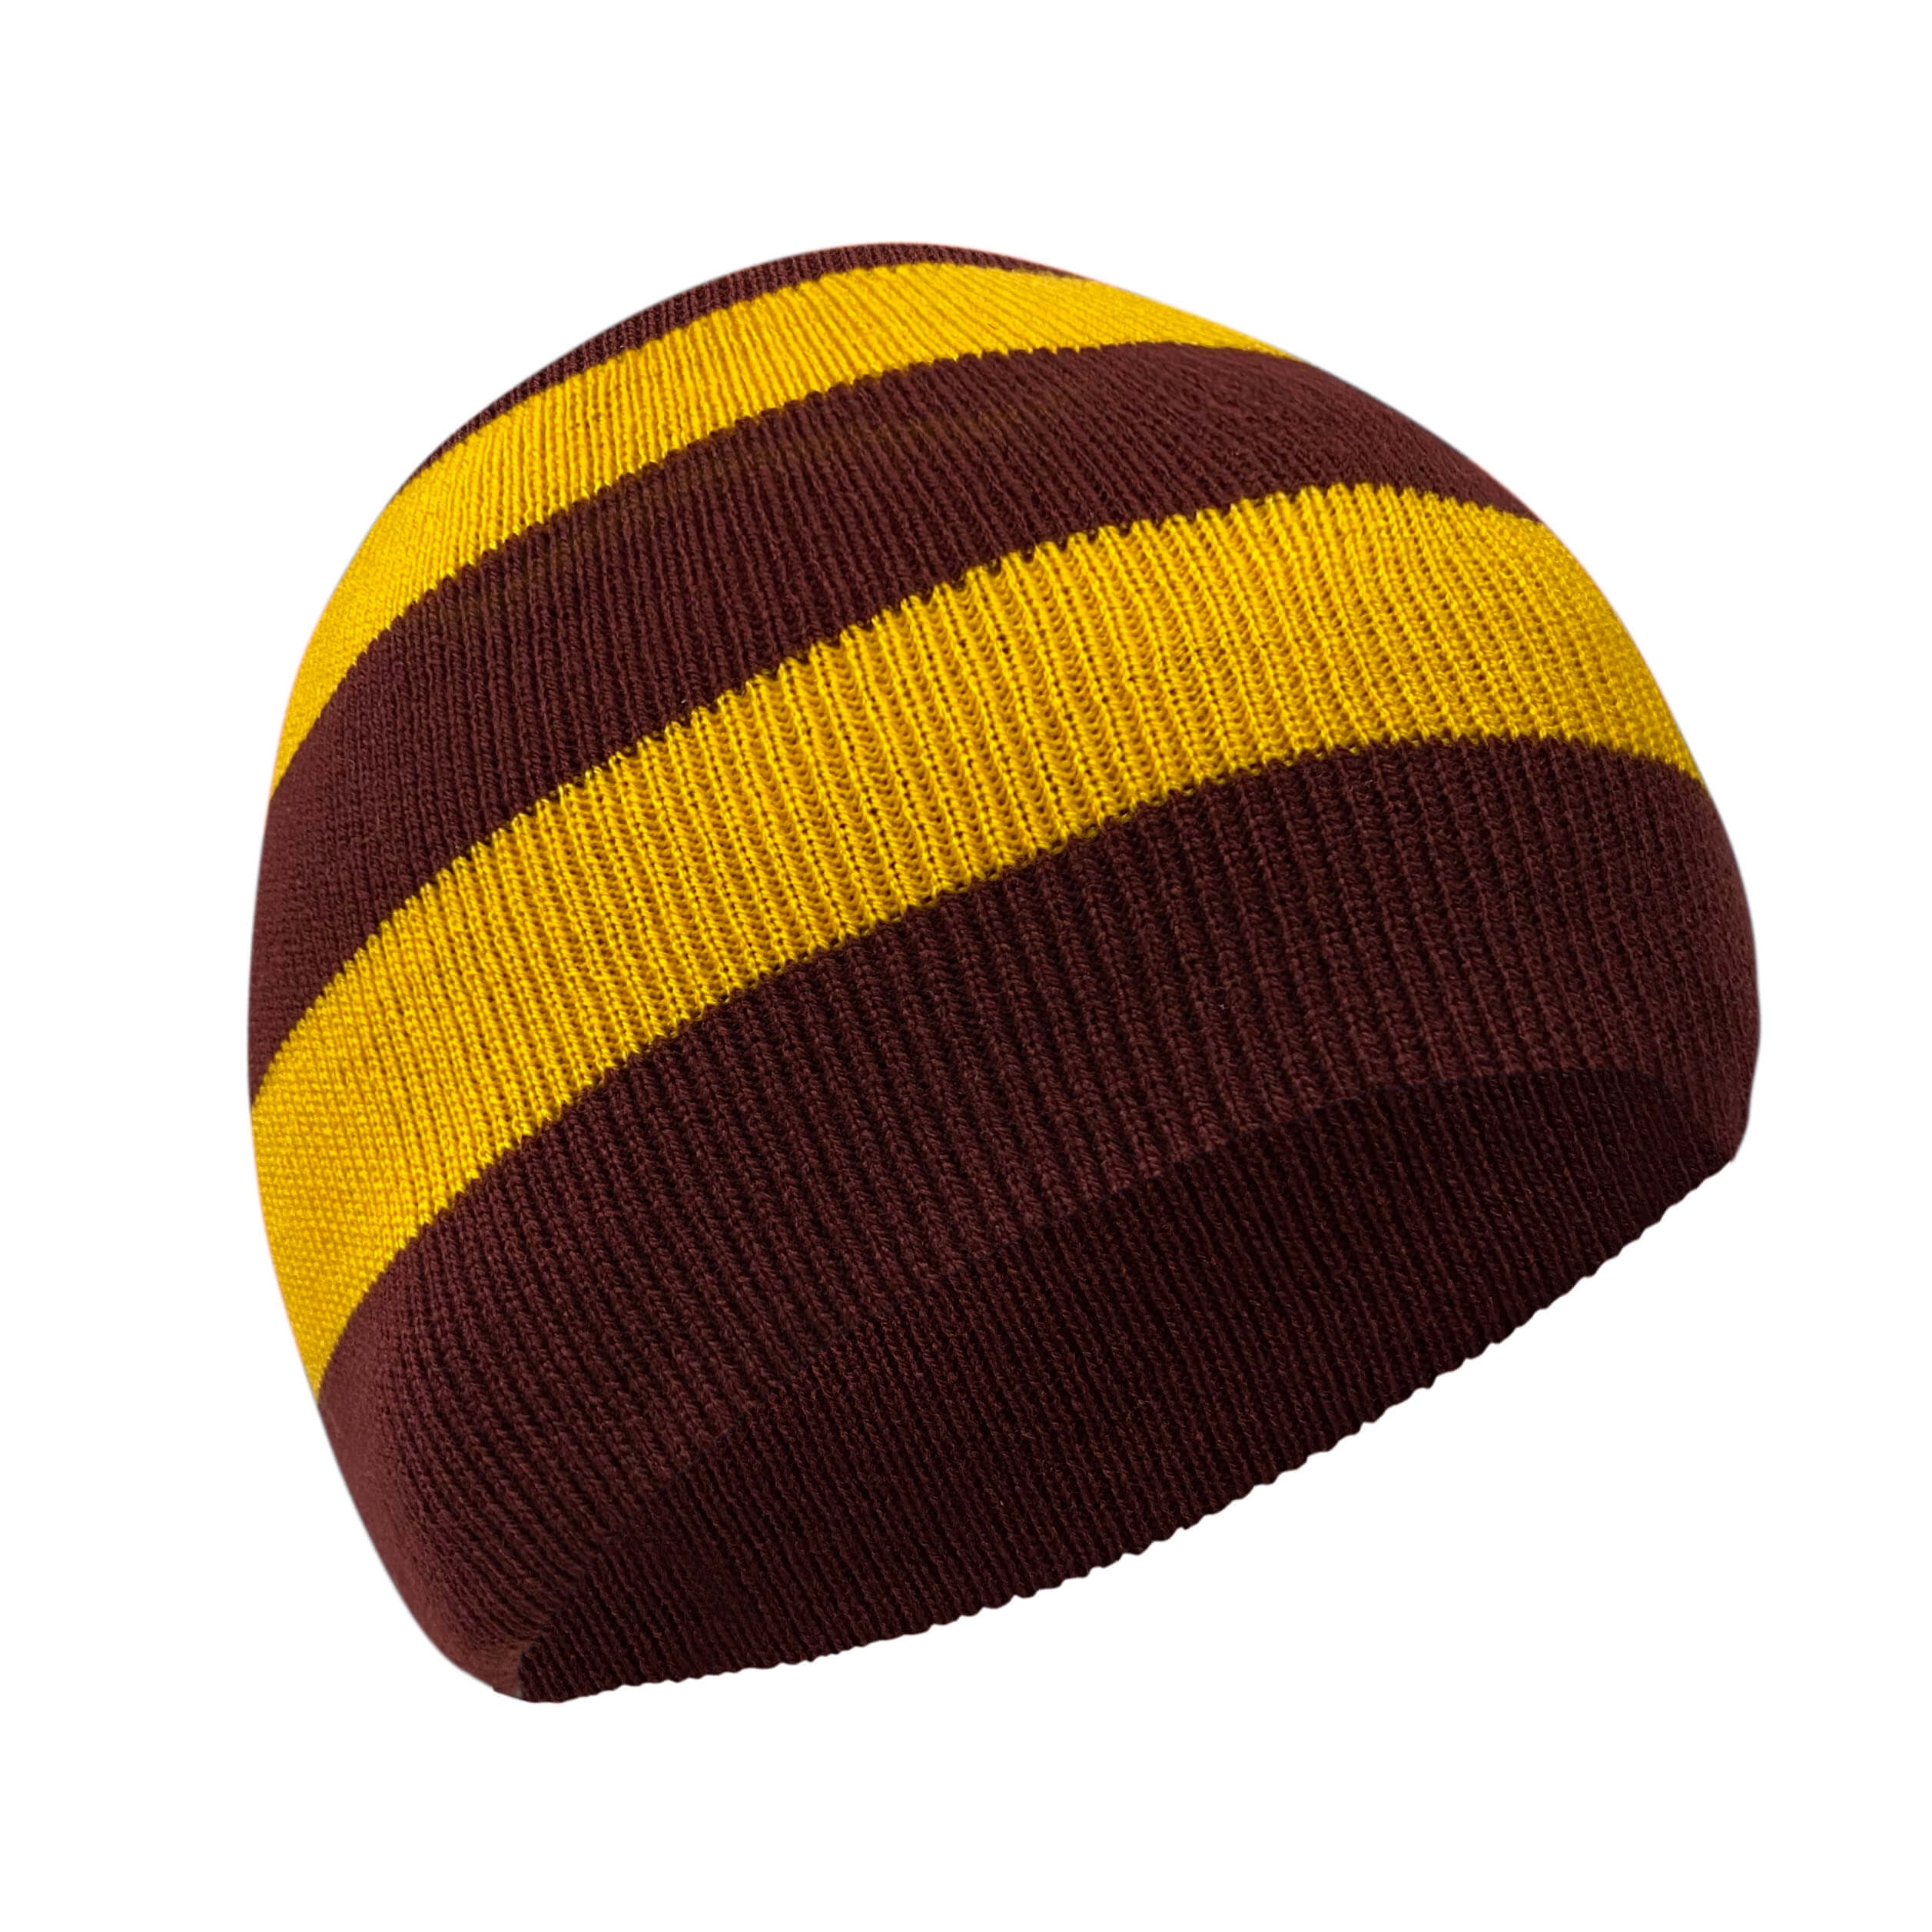 Gahrchian Slouchy Beanie for Men Women Contrast Colors Knitted Warm Winter Fleece Hats 